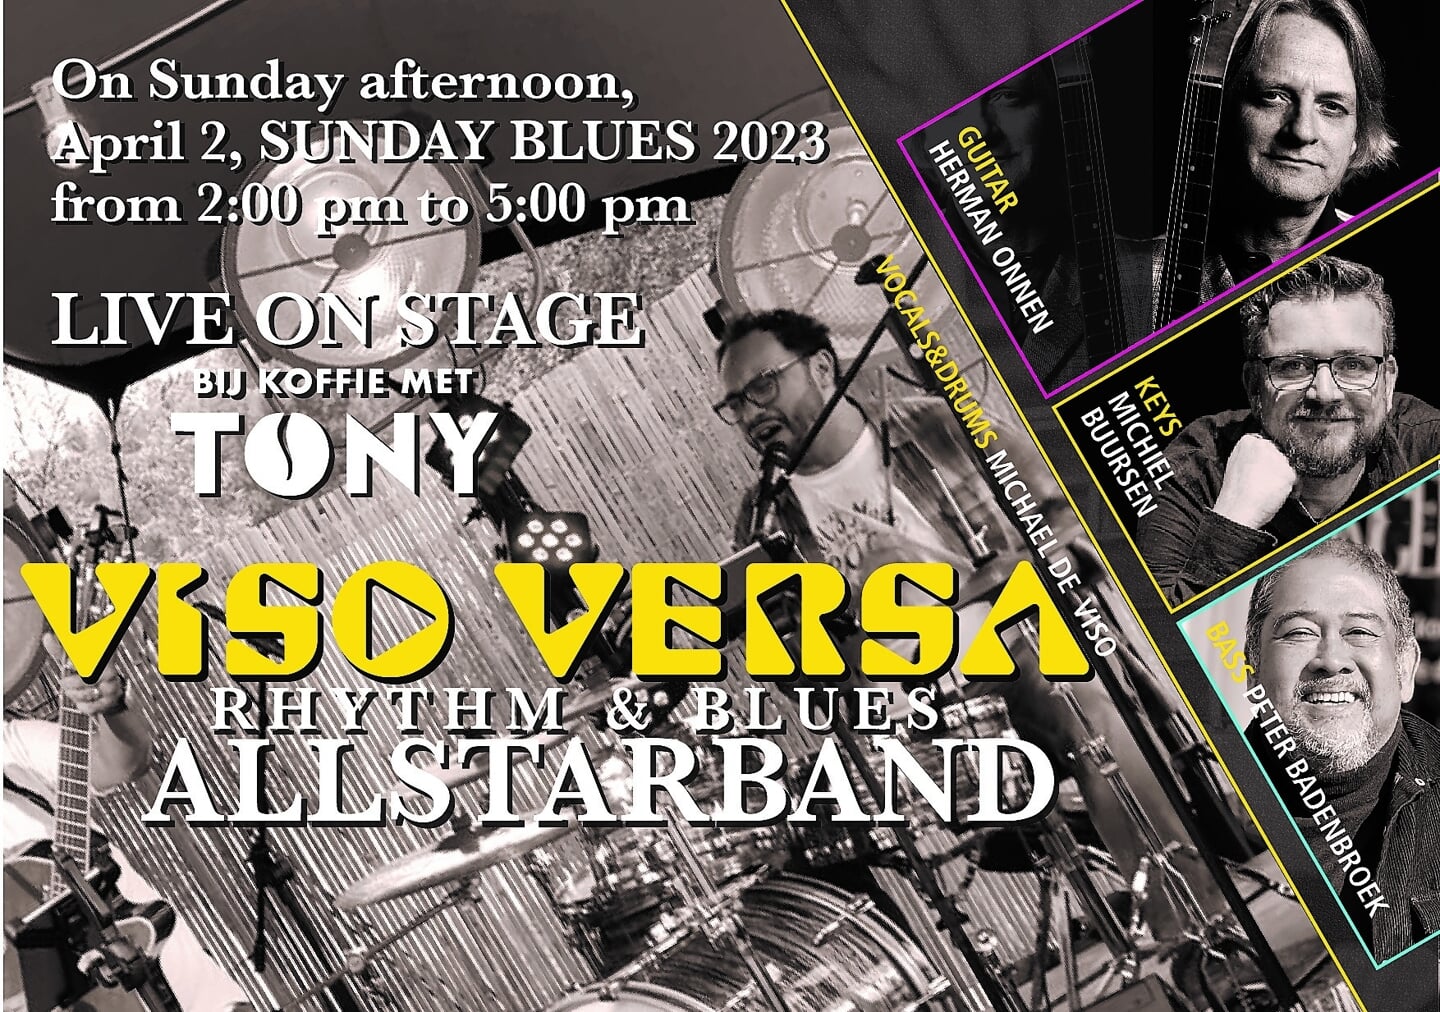 4. Viso Versa Rhythm & Blues Allstarband - Koffie met Tony